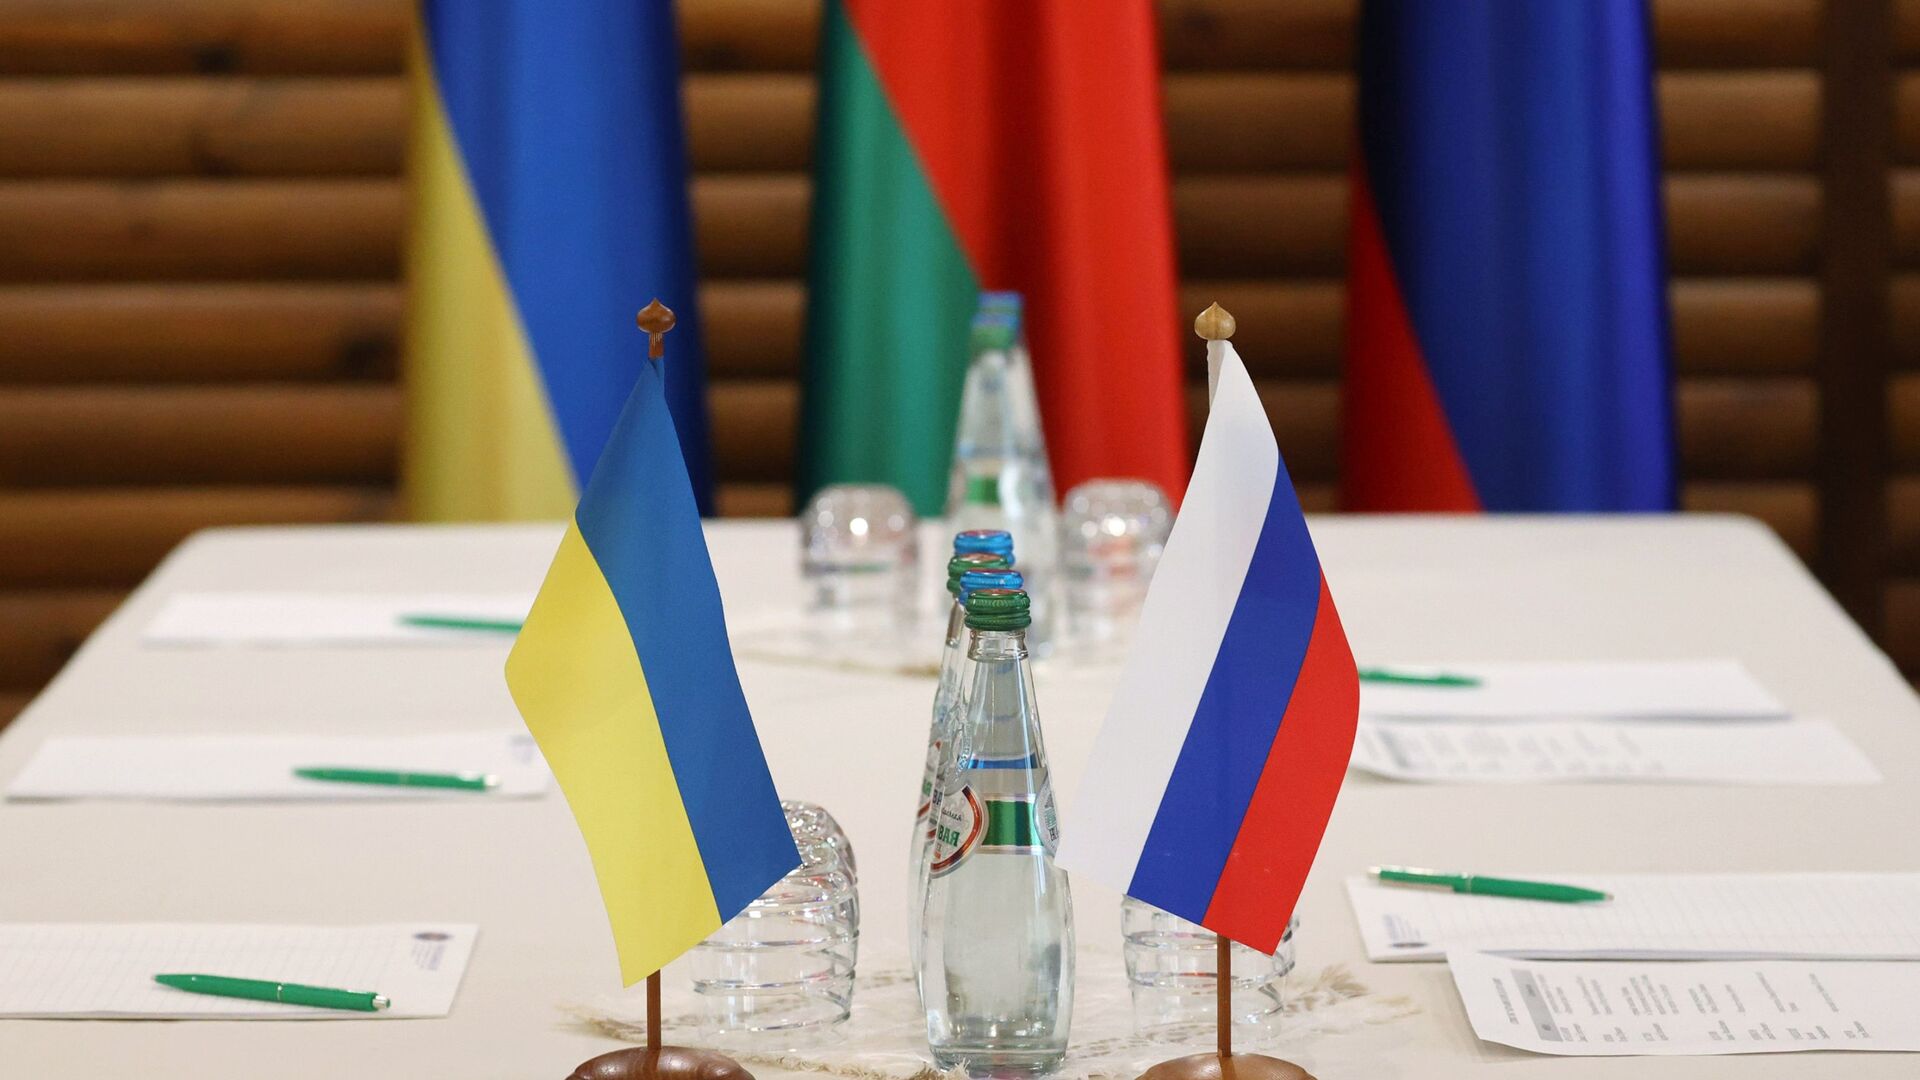 Флажки на столе, за которым пройдут российско-украинские переговоры - Sputnik Таджикистан, 1920, 24.03.2022